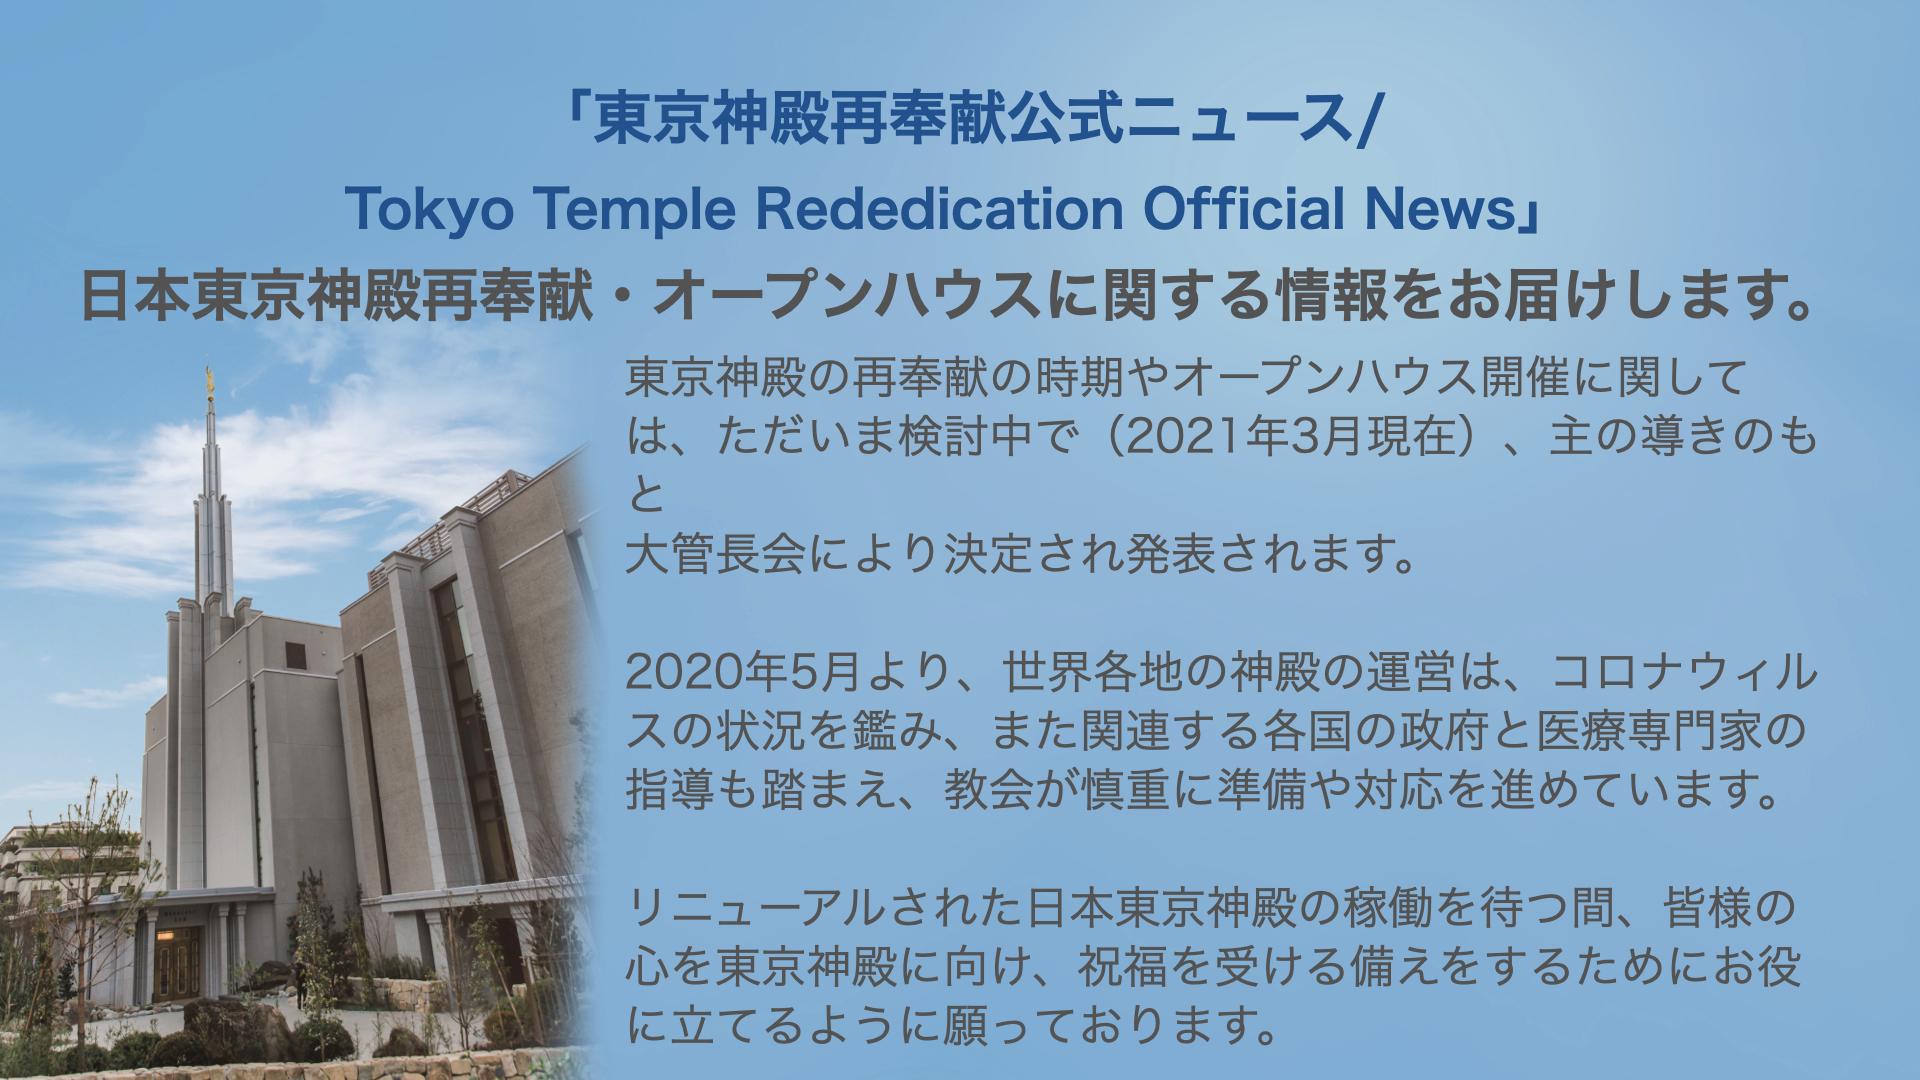 東京神殿再奉献ニュース